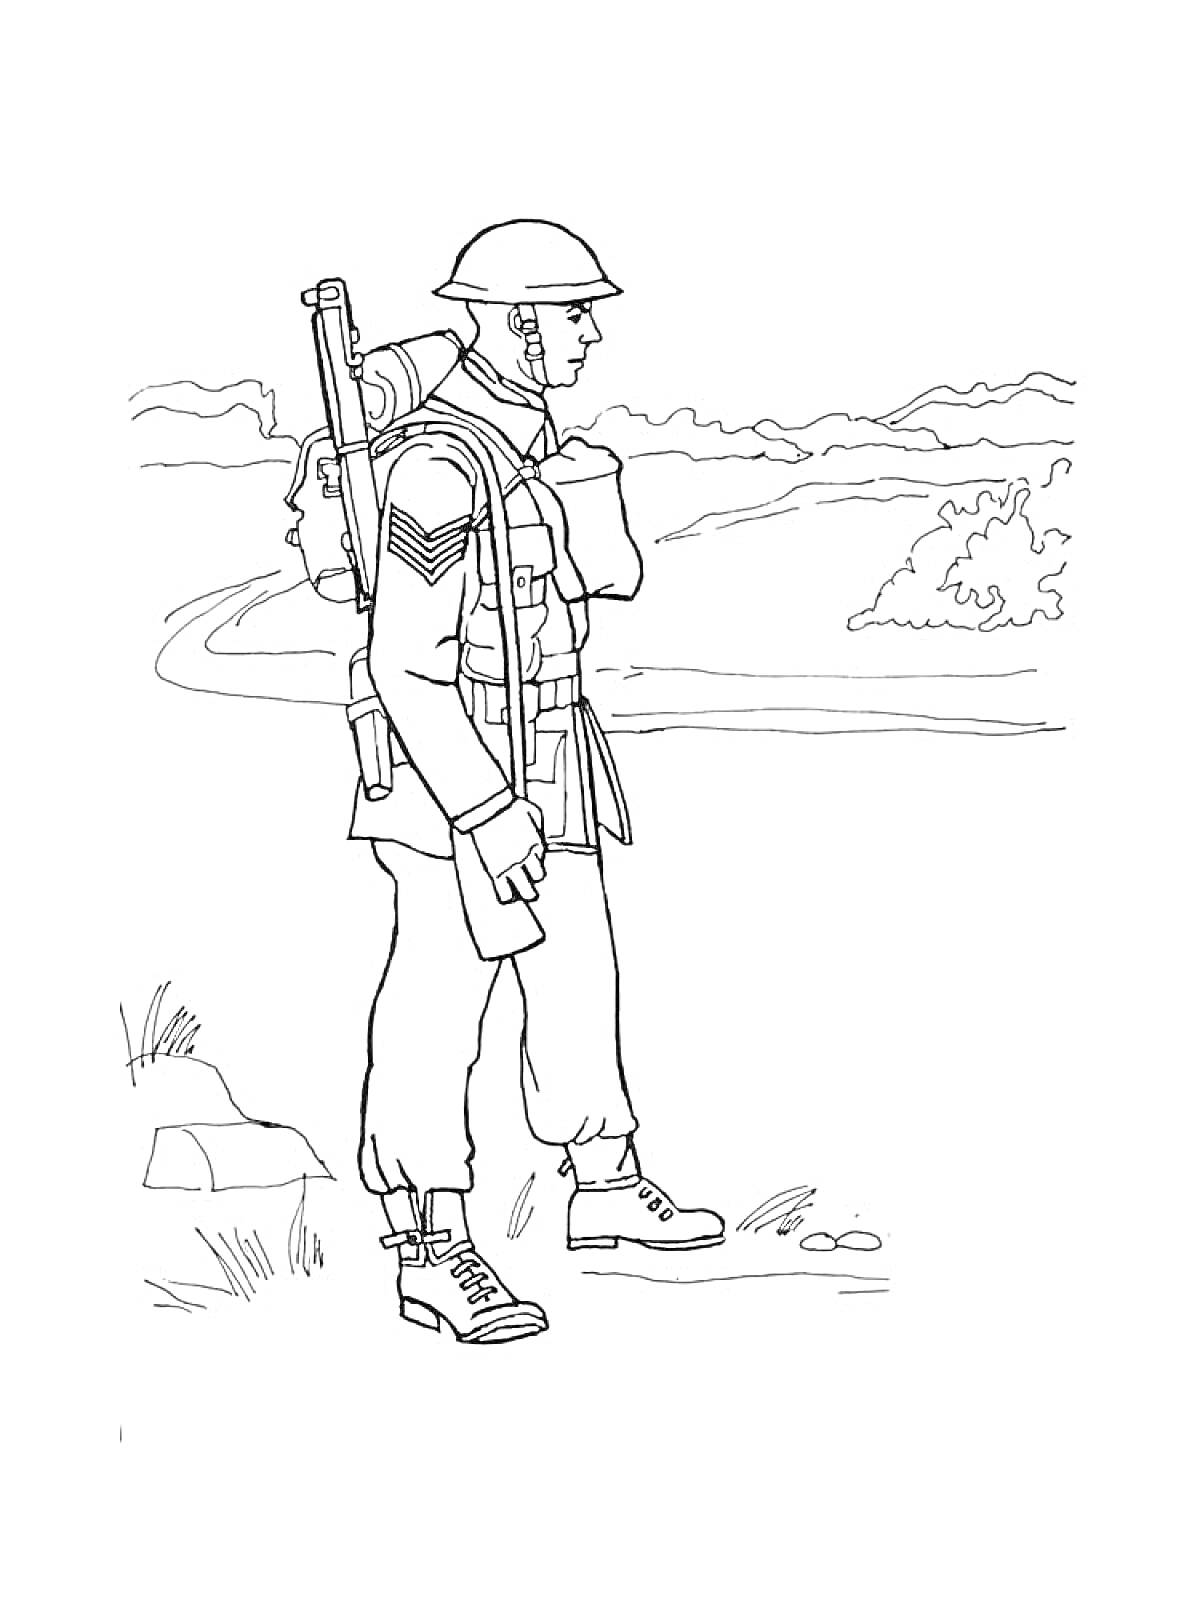 Солдат на марше с рюкзаком и винтовкой на фоне пейзажа с дорогой и кустами